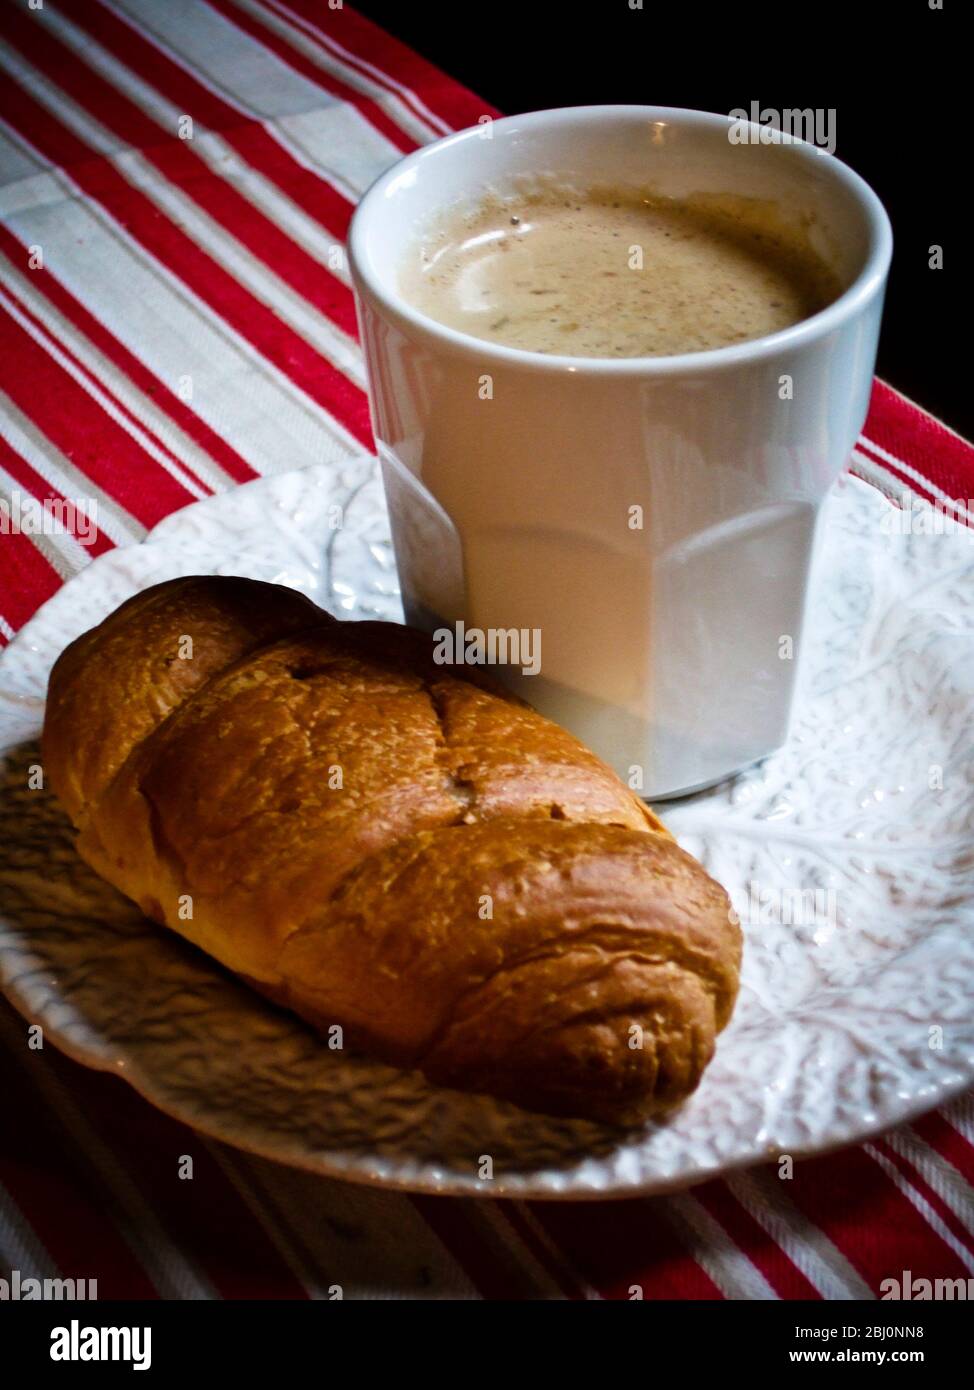 Weißer Becher Kaffee auf Teller mit Croissant - Stockfoto